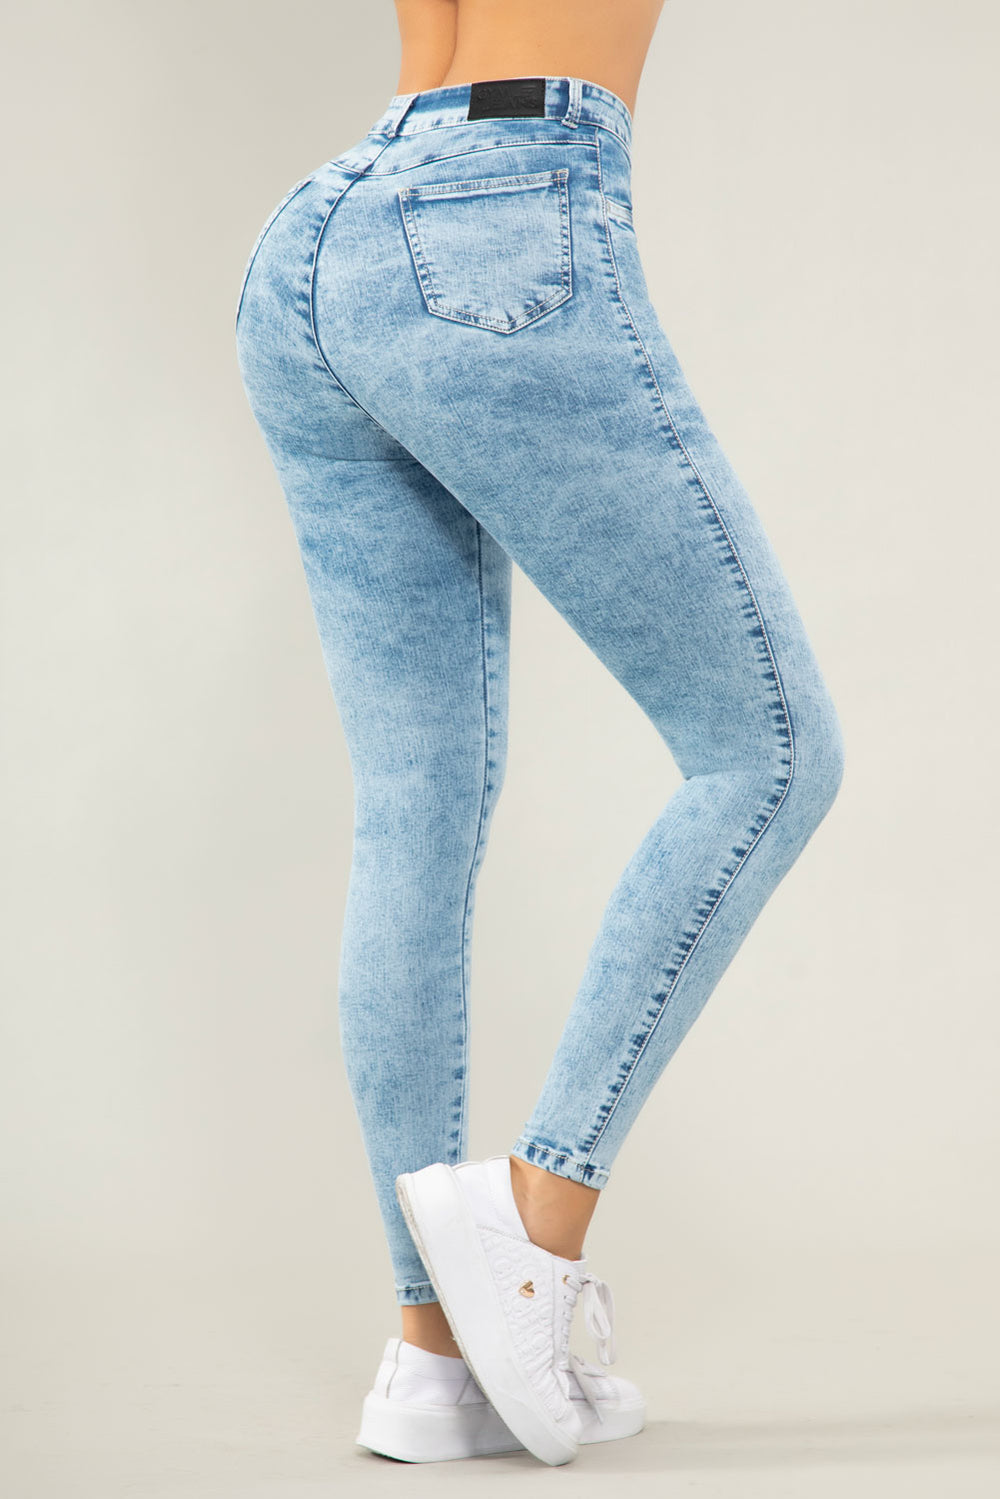 N CON BOLSILLOS – Colombiana de Jeans